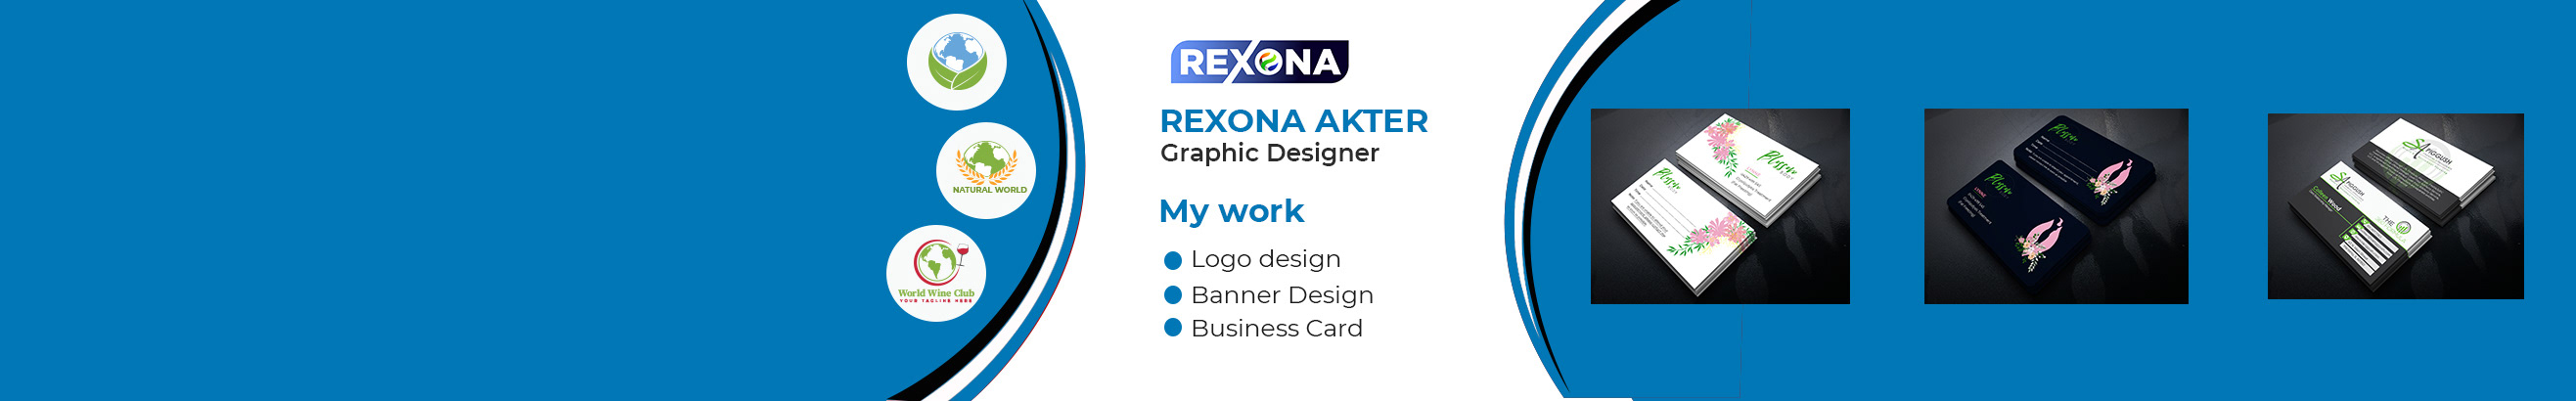 Rexona Akter's profile banner